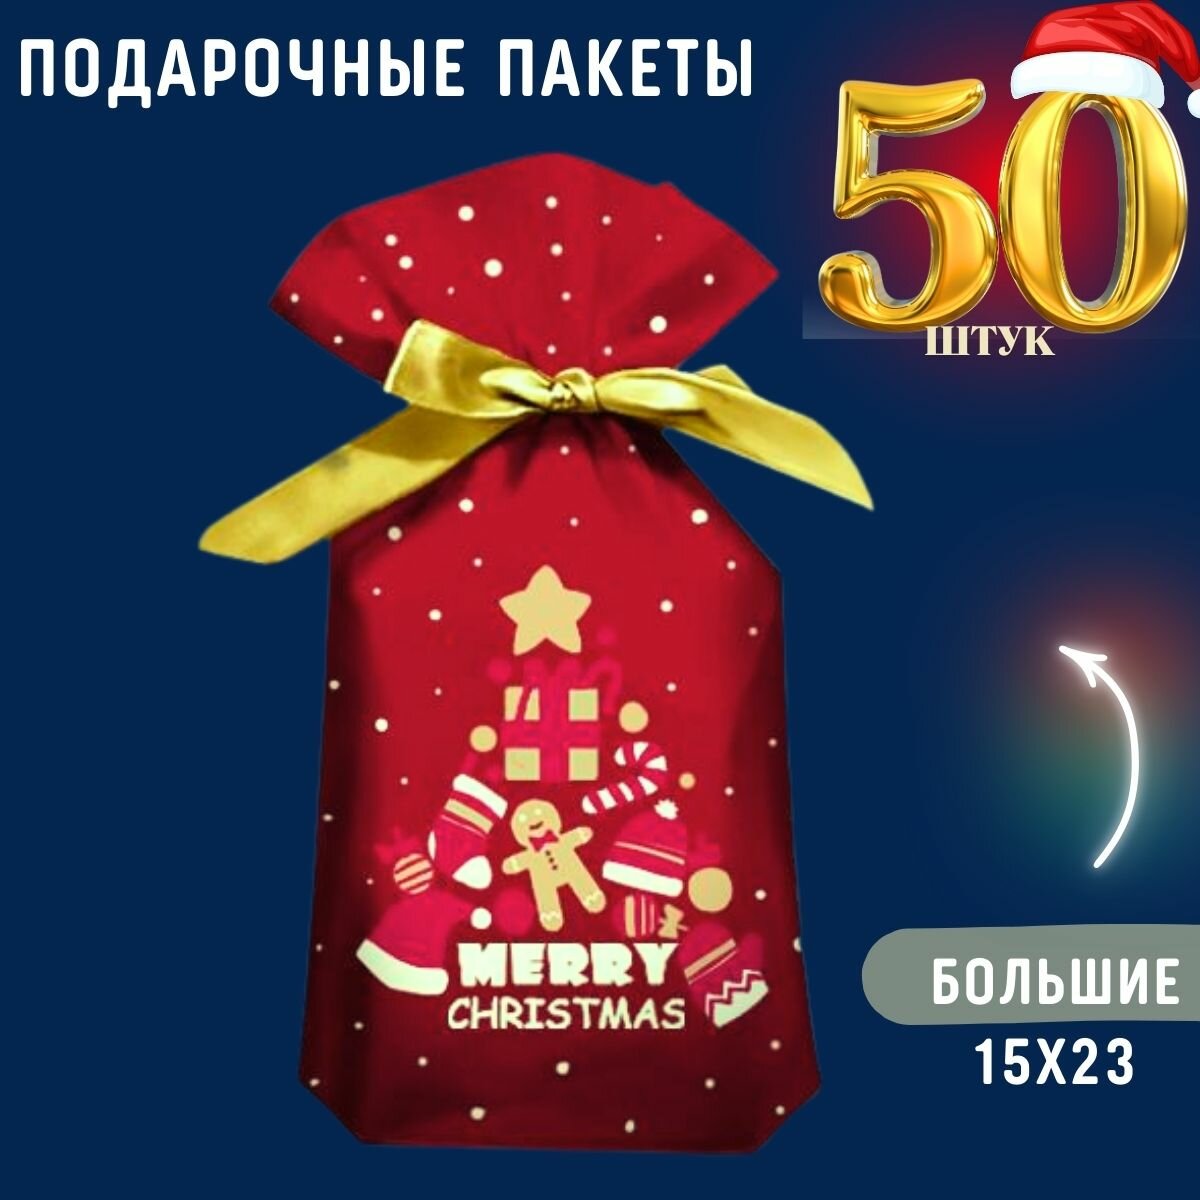 Пакет новогодний подарочный большой набор 50 шт для подарка конфет